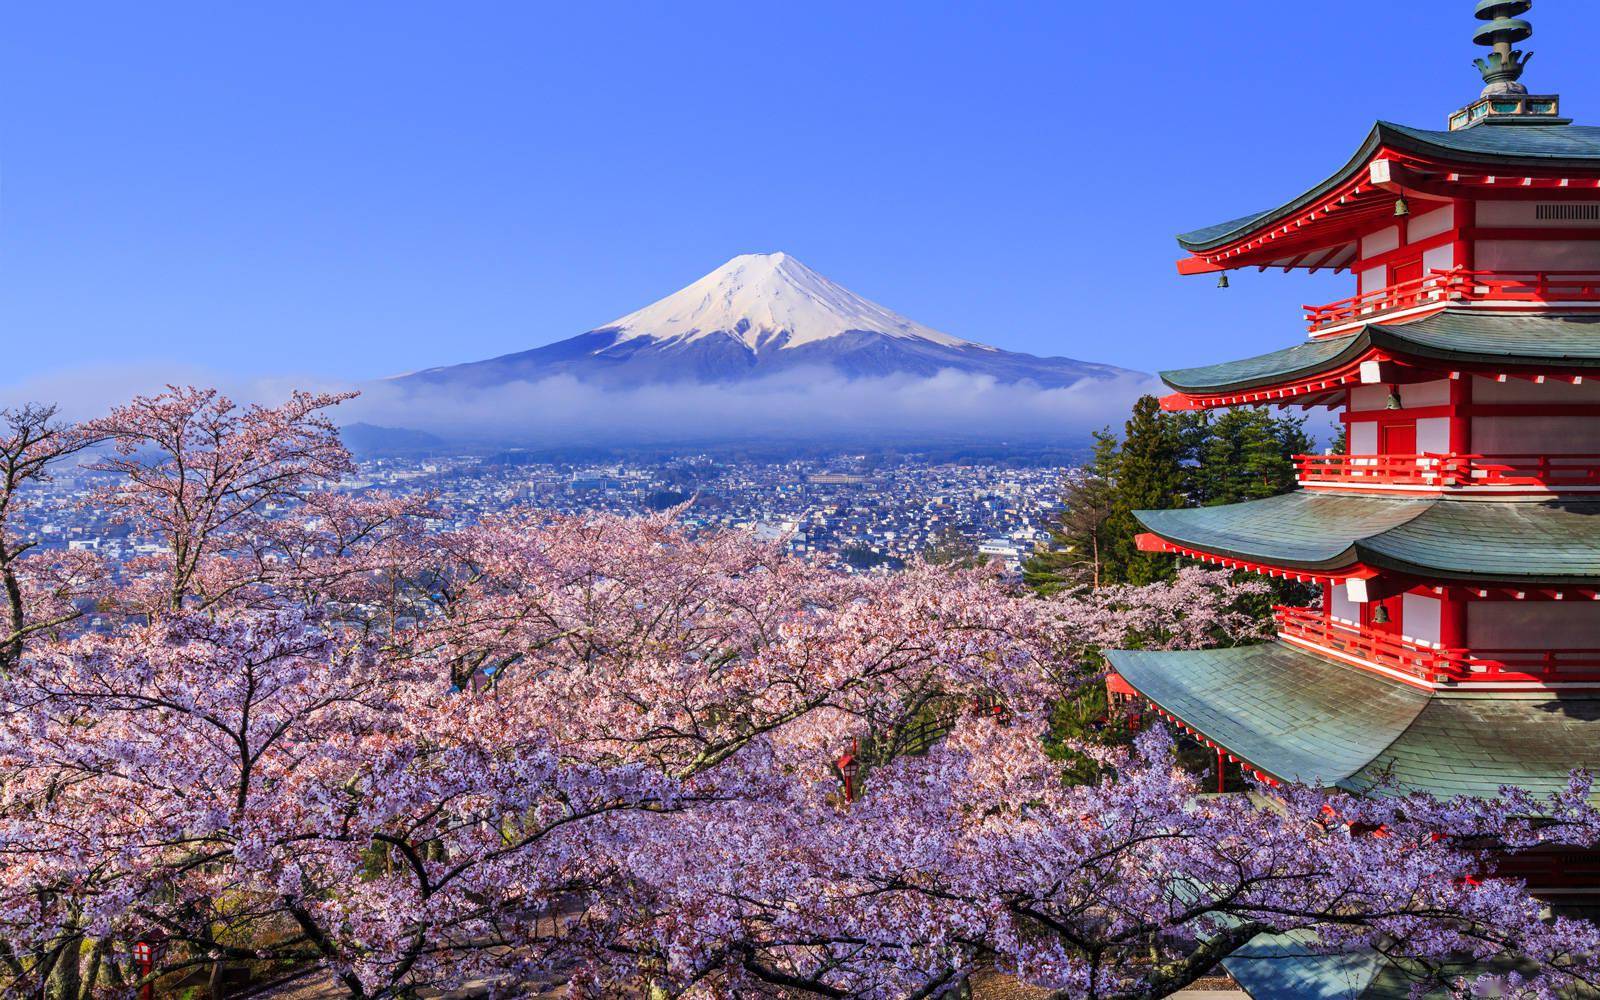 日本现千年来最早樱花季 美好景象背后掩藏怎样的危机